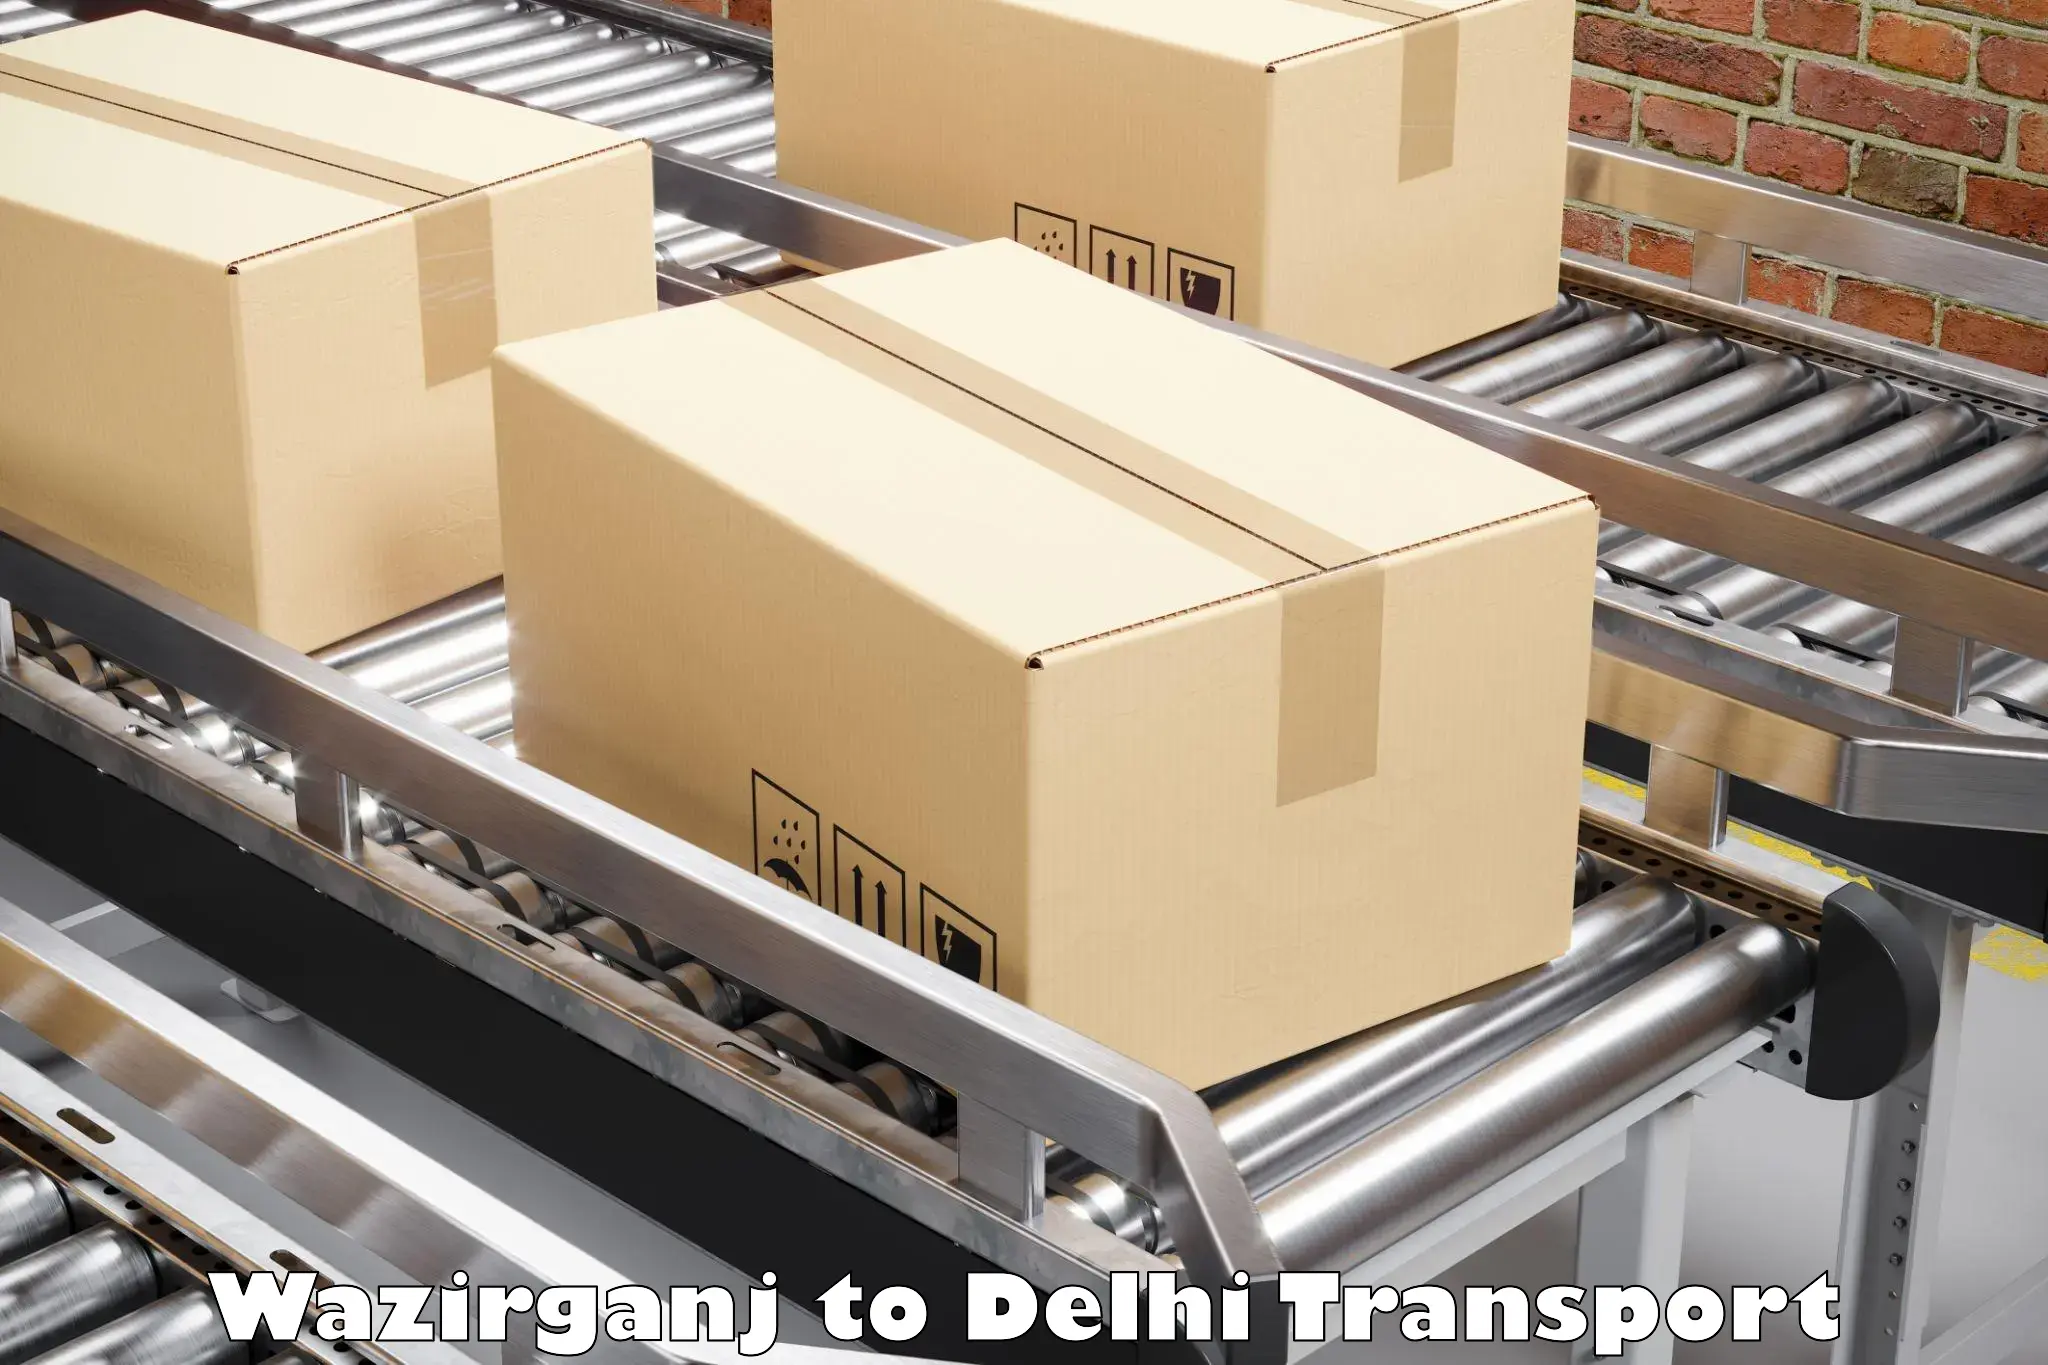 Express transport services Wazirganj to Delhi